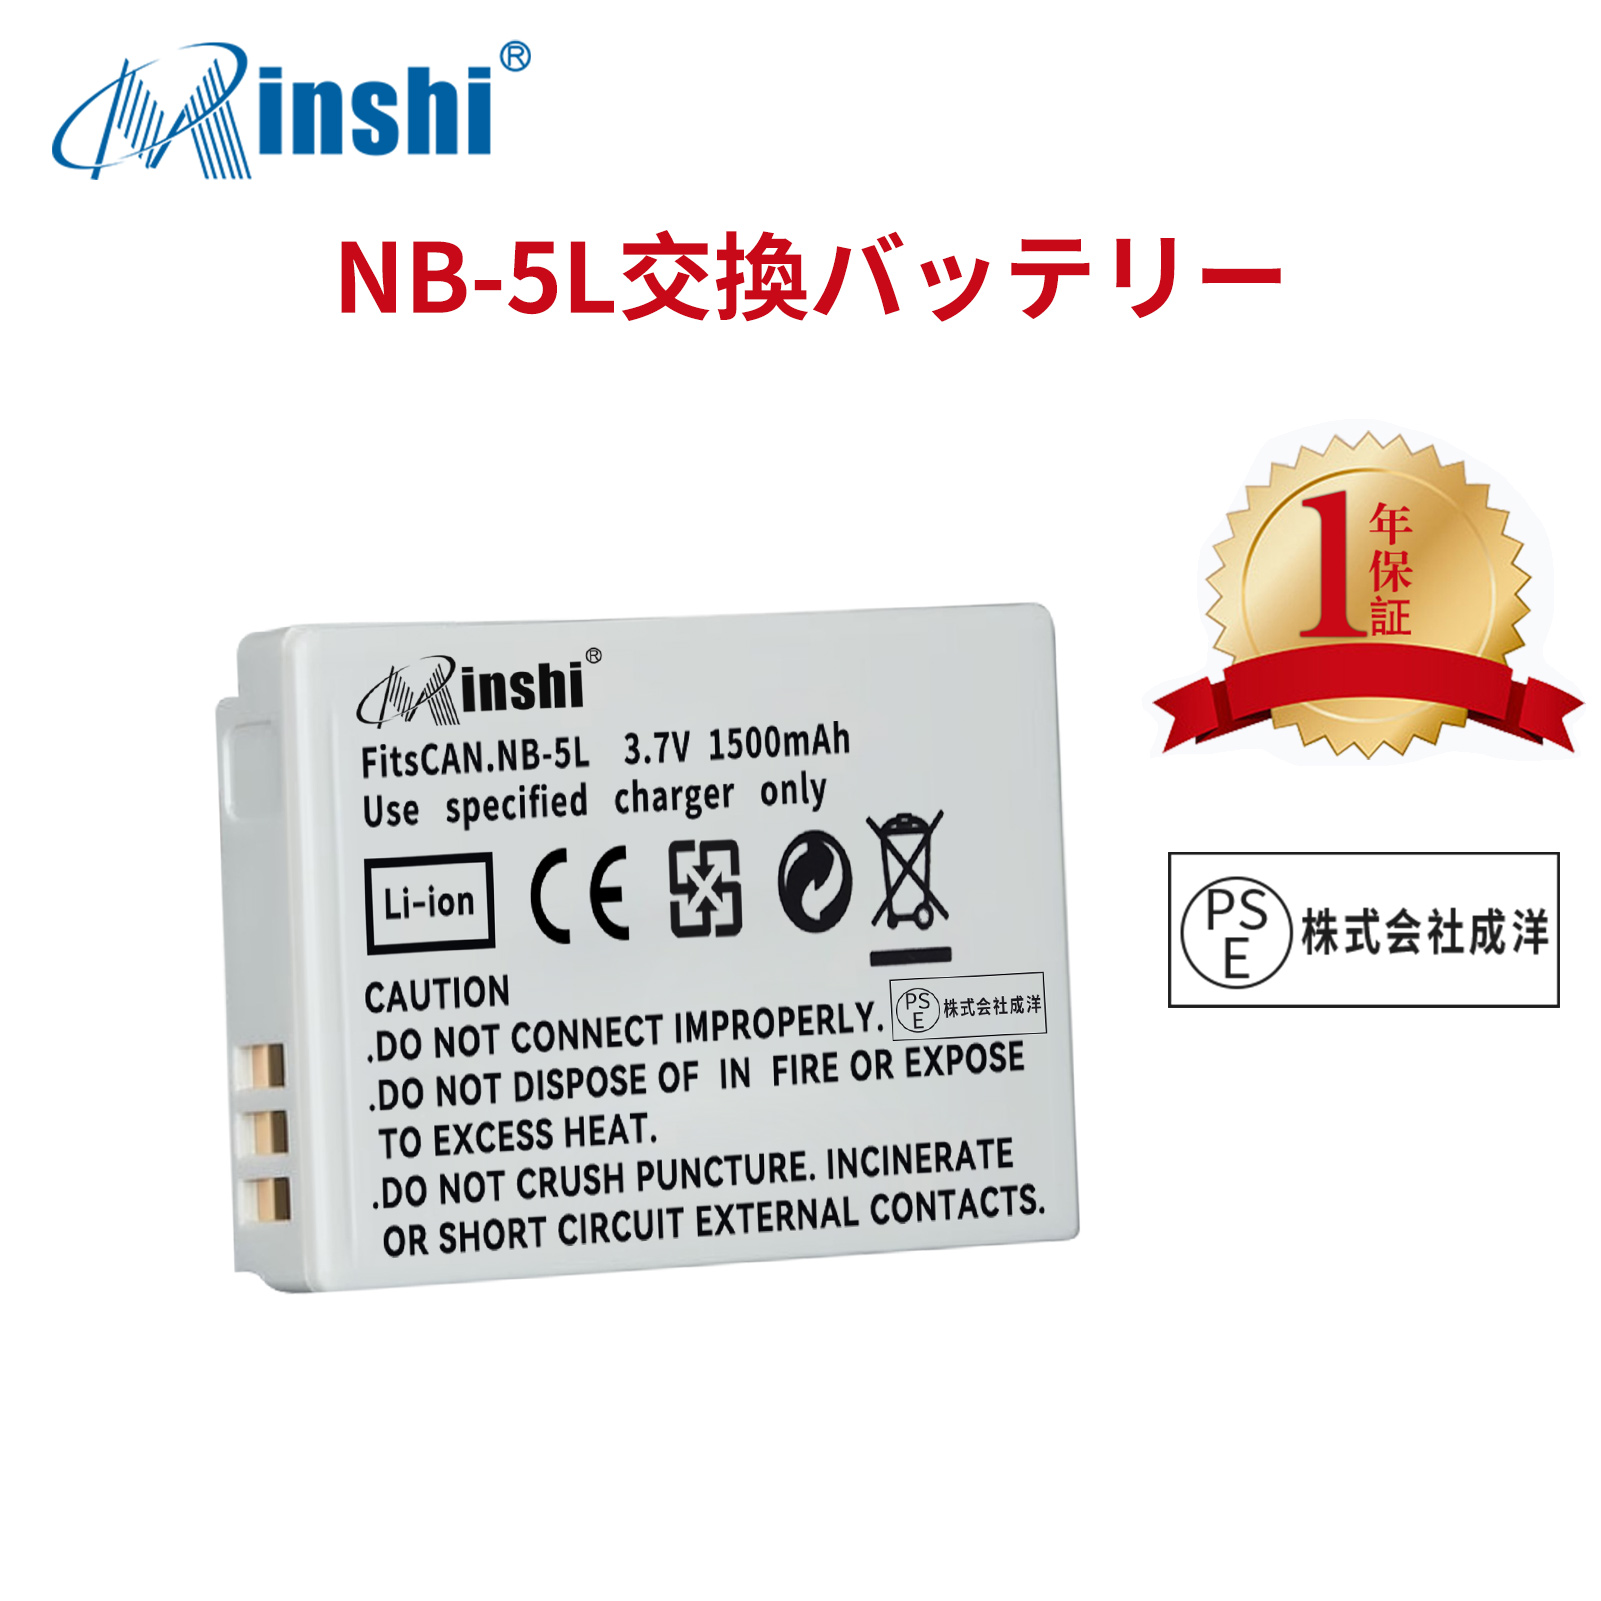 【1年保証】minshi CANON 830IS 【1500mAh 3.7V】PSE認定済 高品質 NB-5L 交換用バッテリー